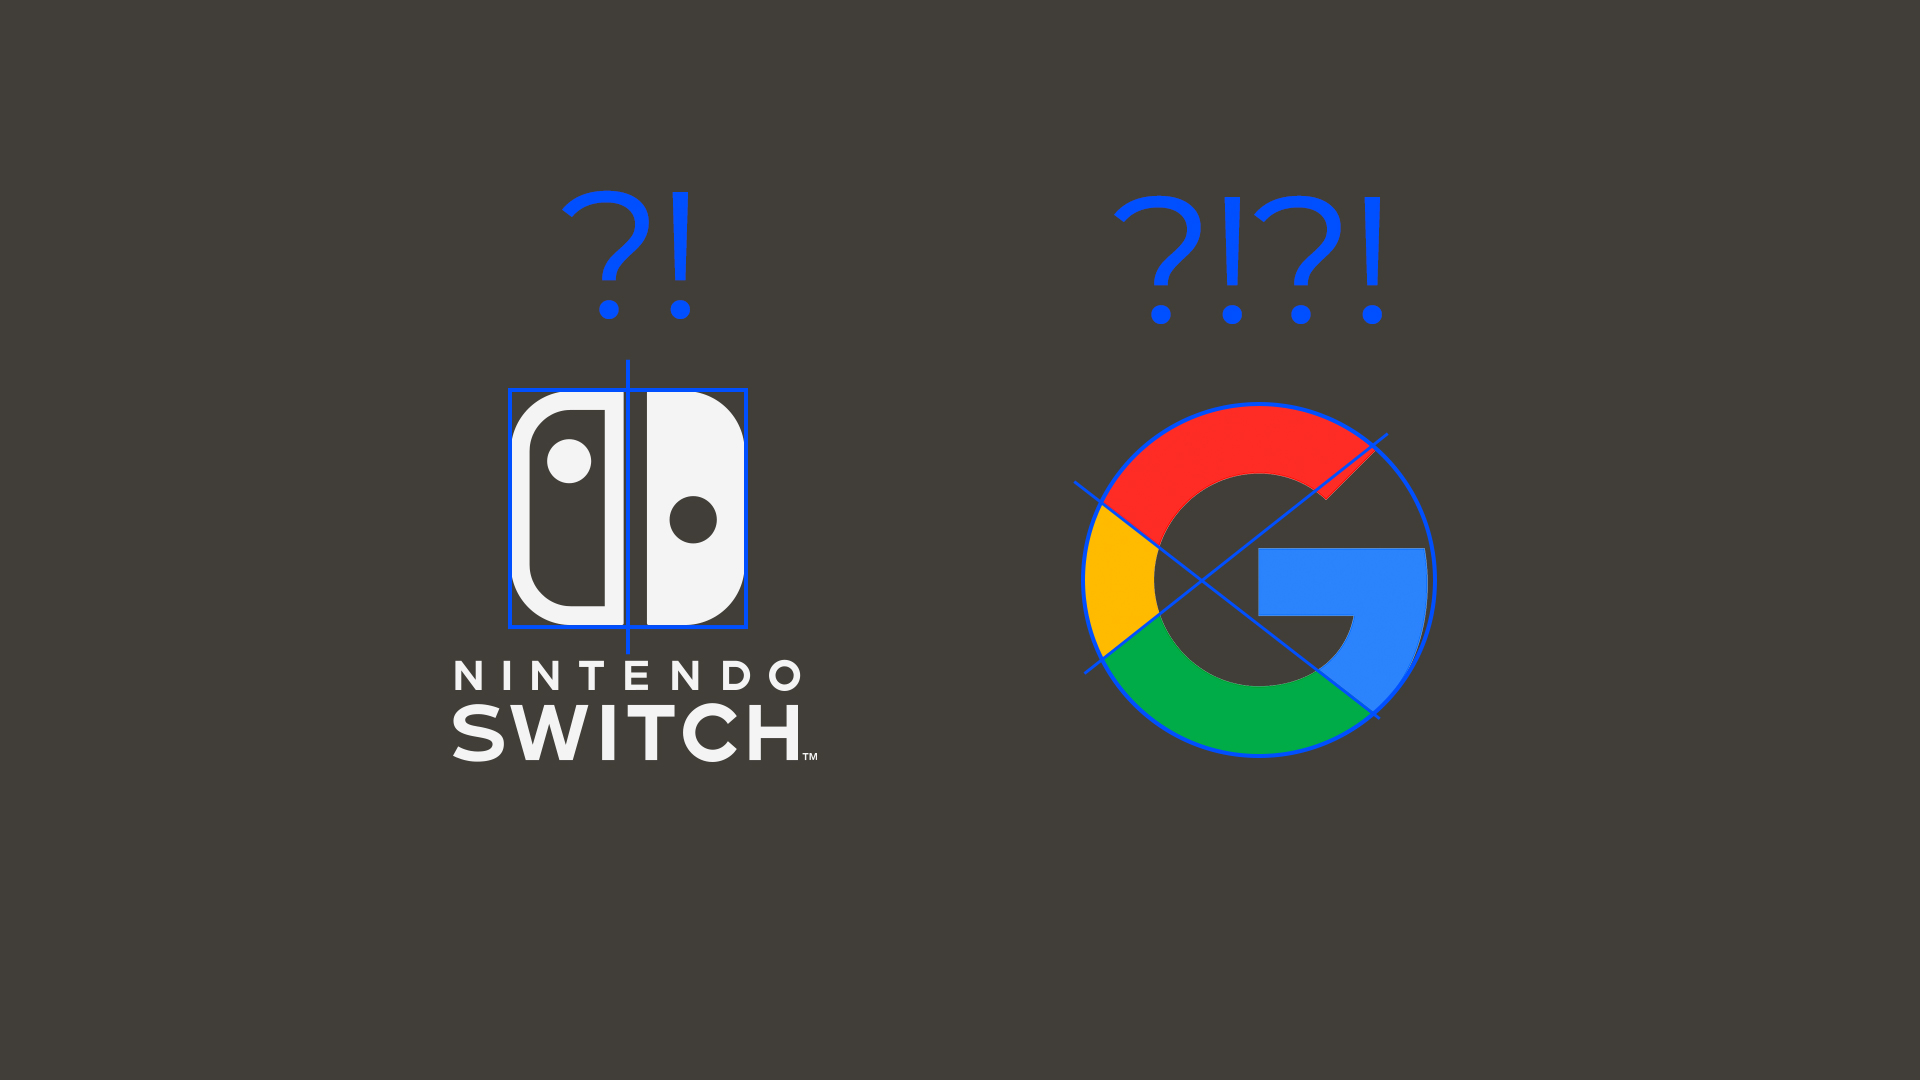 시각보정예시 - 구글로고와 닌텐도 로고